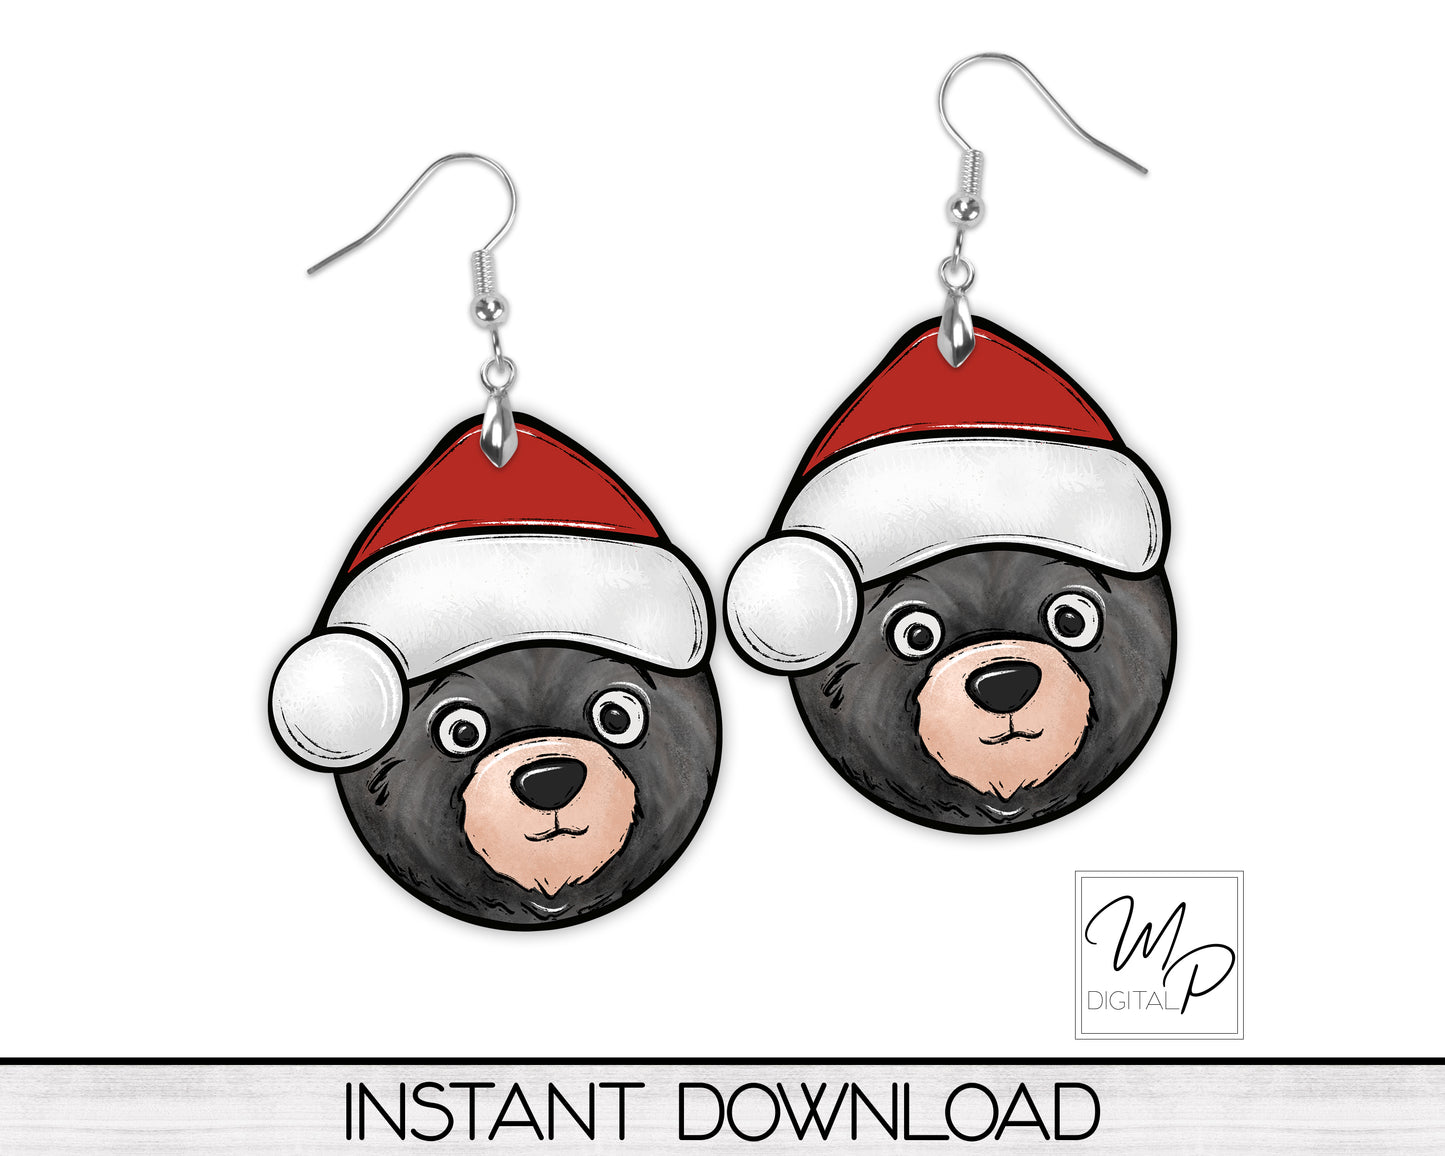 Christmas Bear Santa Hat PNG Design for Sublimation, Digital Download